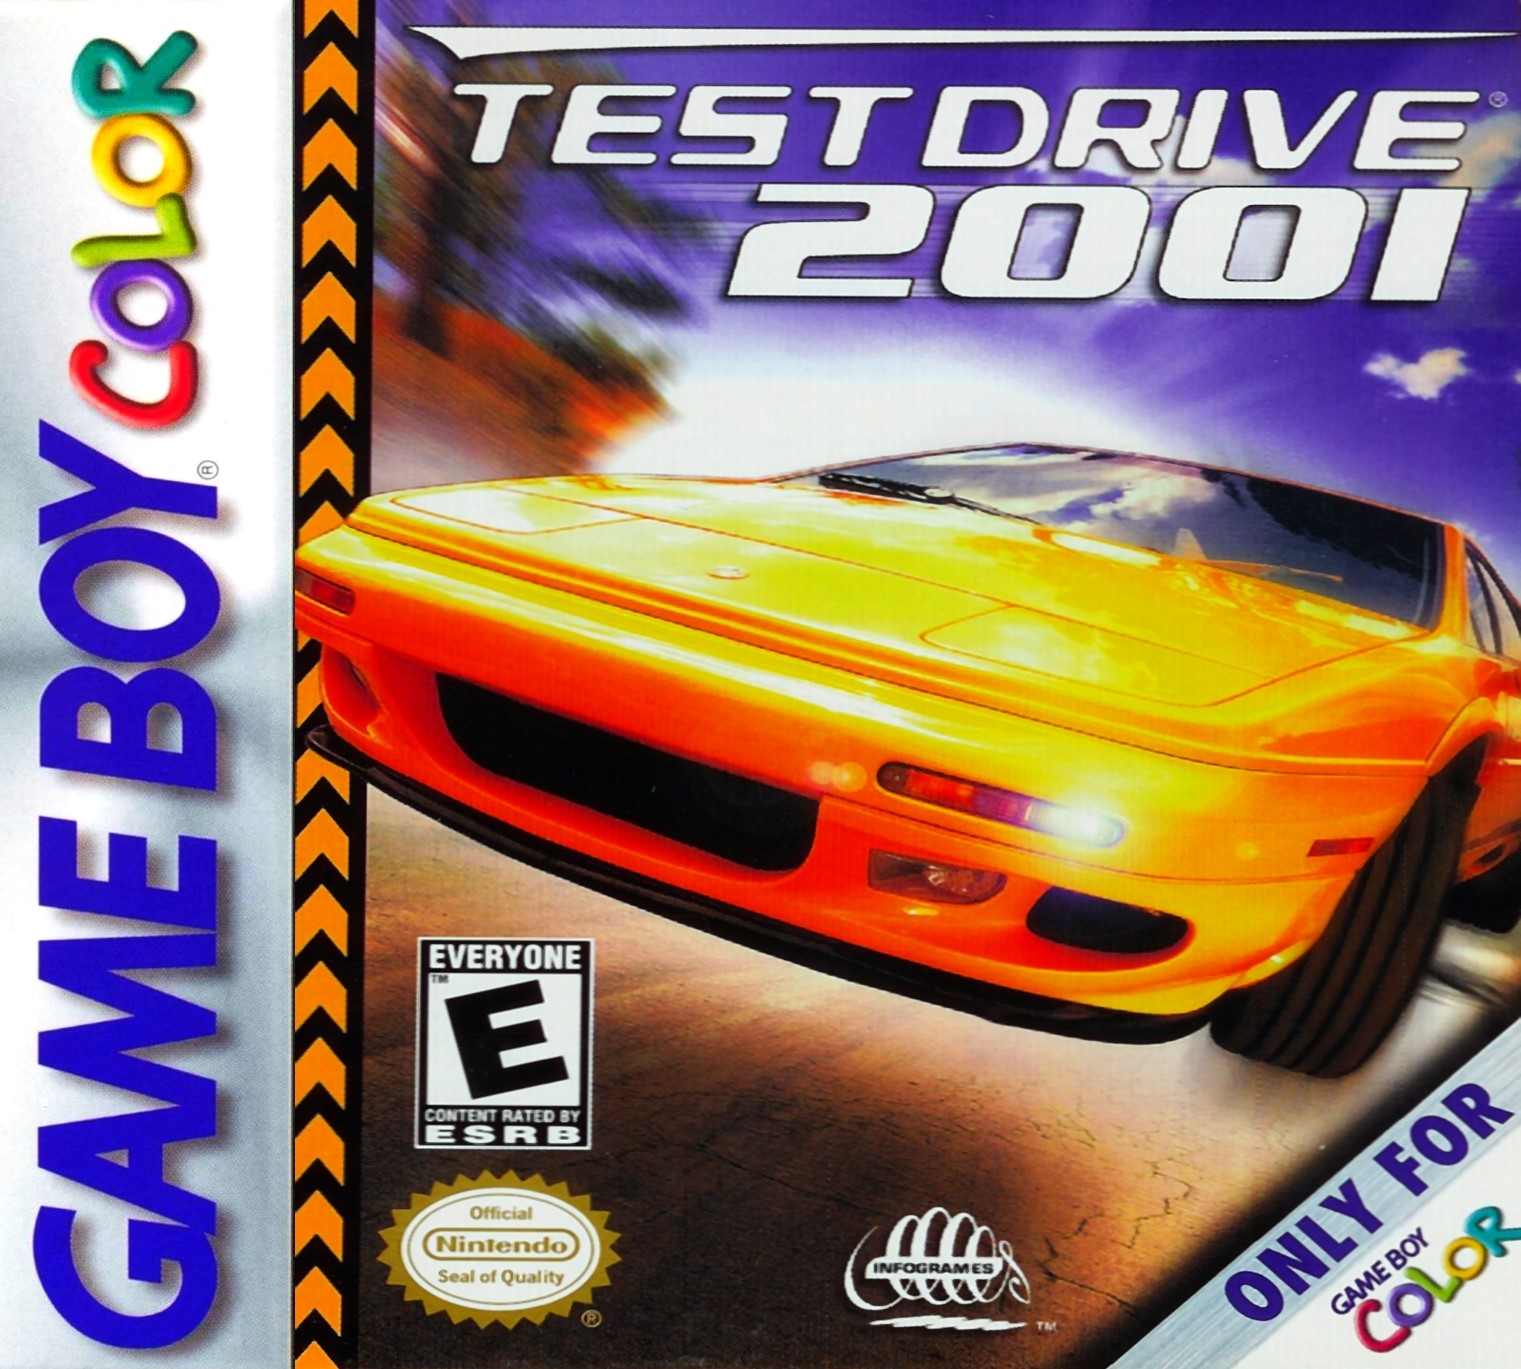 'Test Drive: 2001'